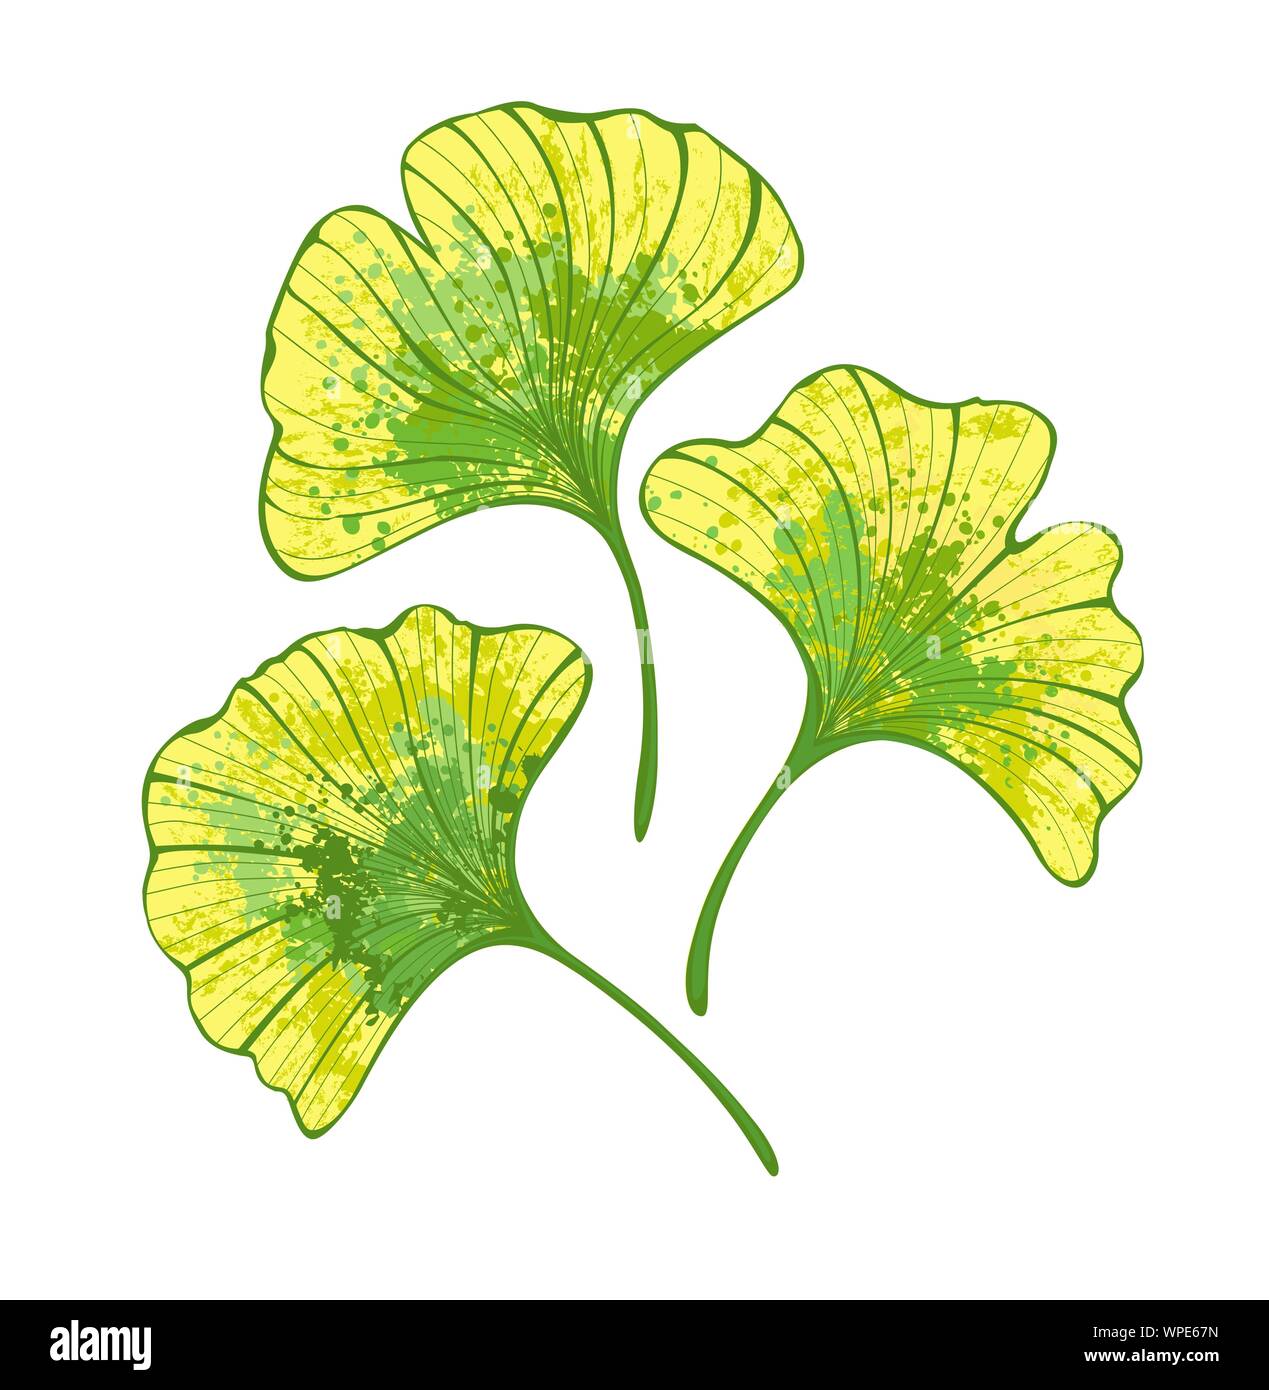 Ensemble de feuilles de ginko biloba automne artistique peint en vert et jaune sur fond blanc. Illustration de Vecteur